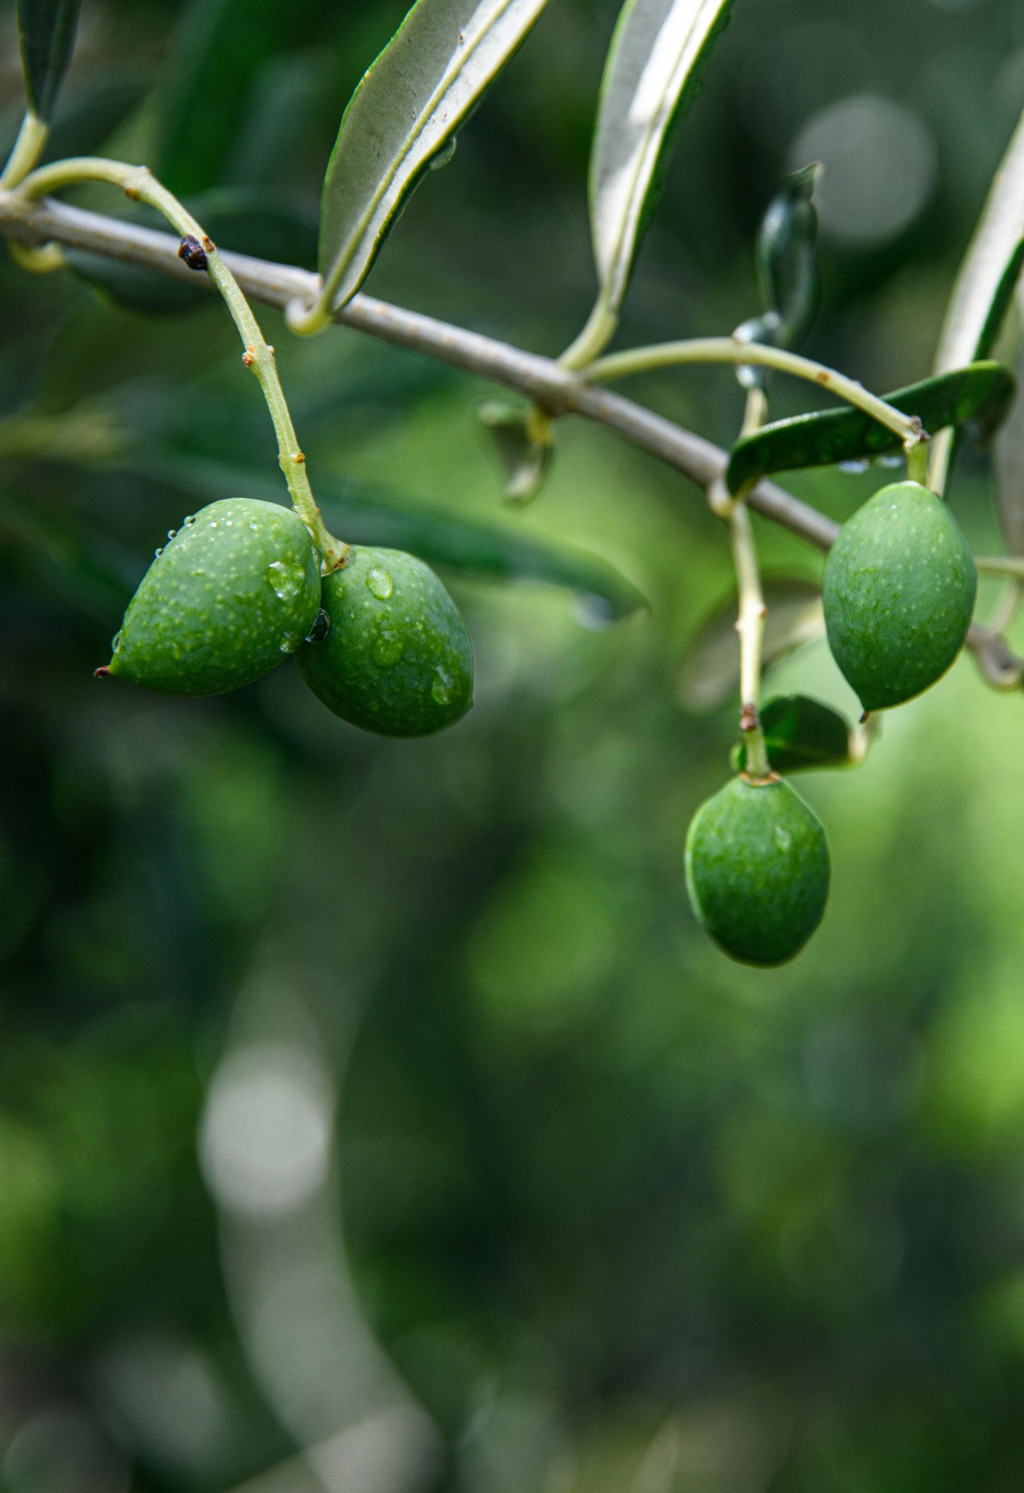 &lt;p&gt;Mladi plodovi masline oblice na stablu u mjestu Igrane na Makarskoj rivijeri.&lt;br&gt;
 &lt;/p&gt;